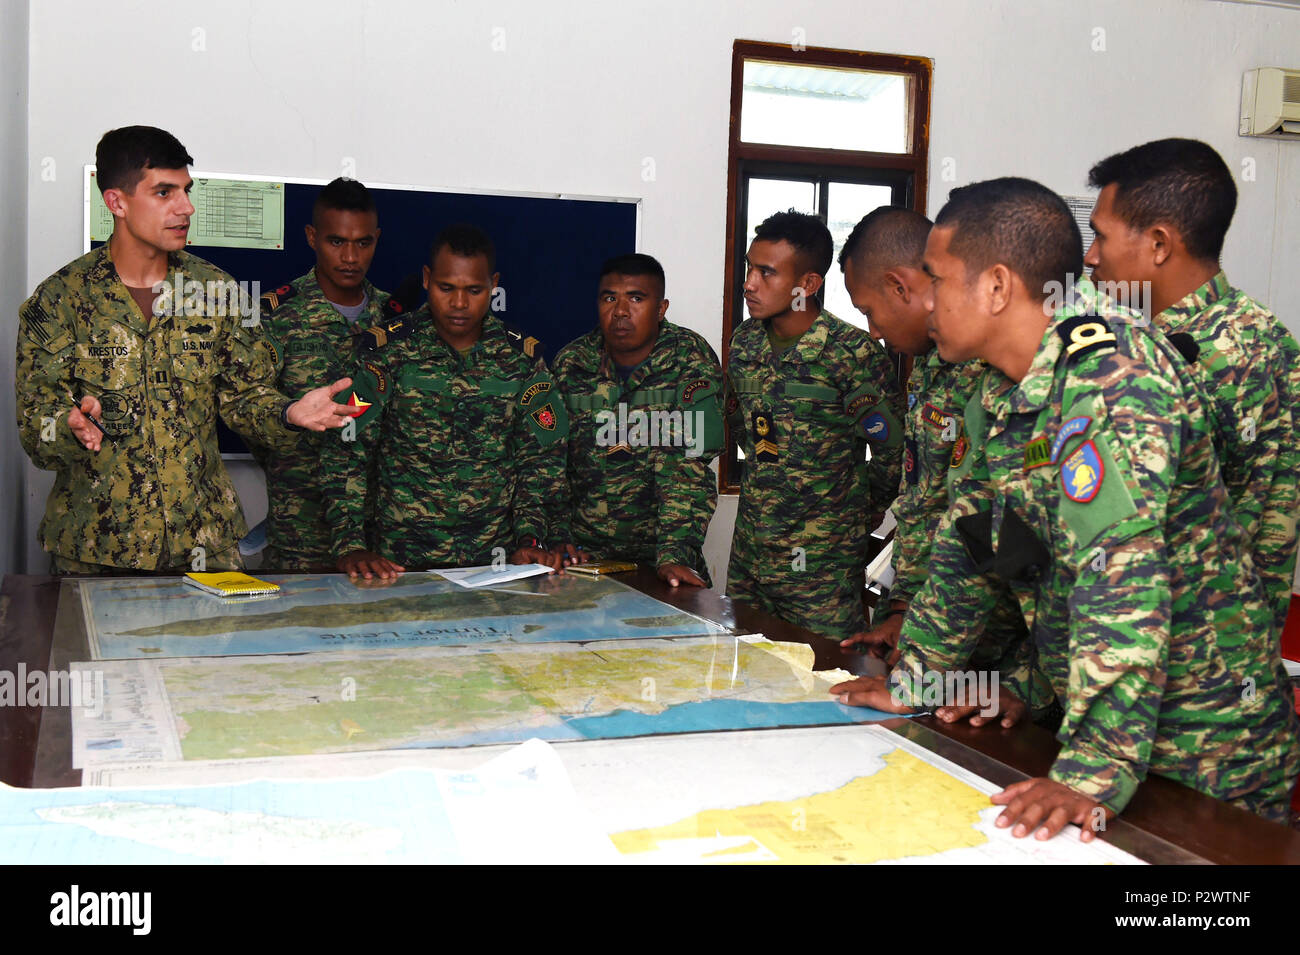 160801-N-DH124-176 DILI, Timor-Leste (Ago. 1, 2016) - El Teniente de la Marina estadounidense Michael Krestos, asignado al batallón móvil de Construcción Naval (NMCB) 4, enseña planificación operacional a Timor-Leste Defesa Forsa (F-FDTL) los miembros del servicio durante la cooperación a flote la disposición y Formación (quilate) Timor-Leste 2016. El enfoque de CARAT está desarrollando capacidades de seguridad marítima y el aumento de la interoperabilidad entre los participantes. Áreas de habilidades ejercidas durante el CARAT incluyen operaciones de interdicción marítima, fluvial; anfibios y operaciones de buceo submarino de guerra; y operaciones de salvamento; artillería naval y mane Foto de stock